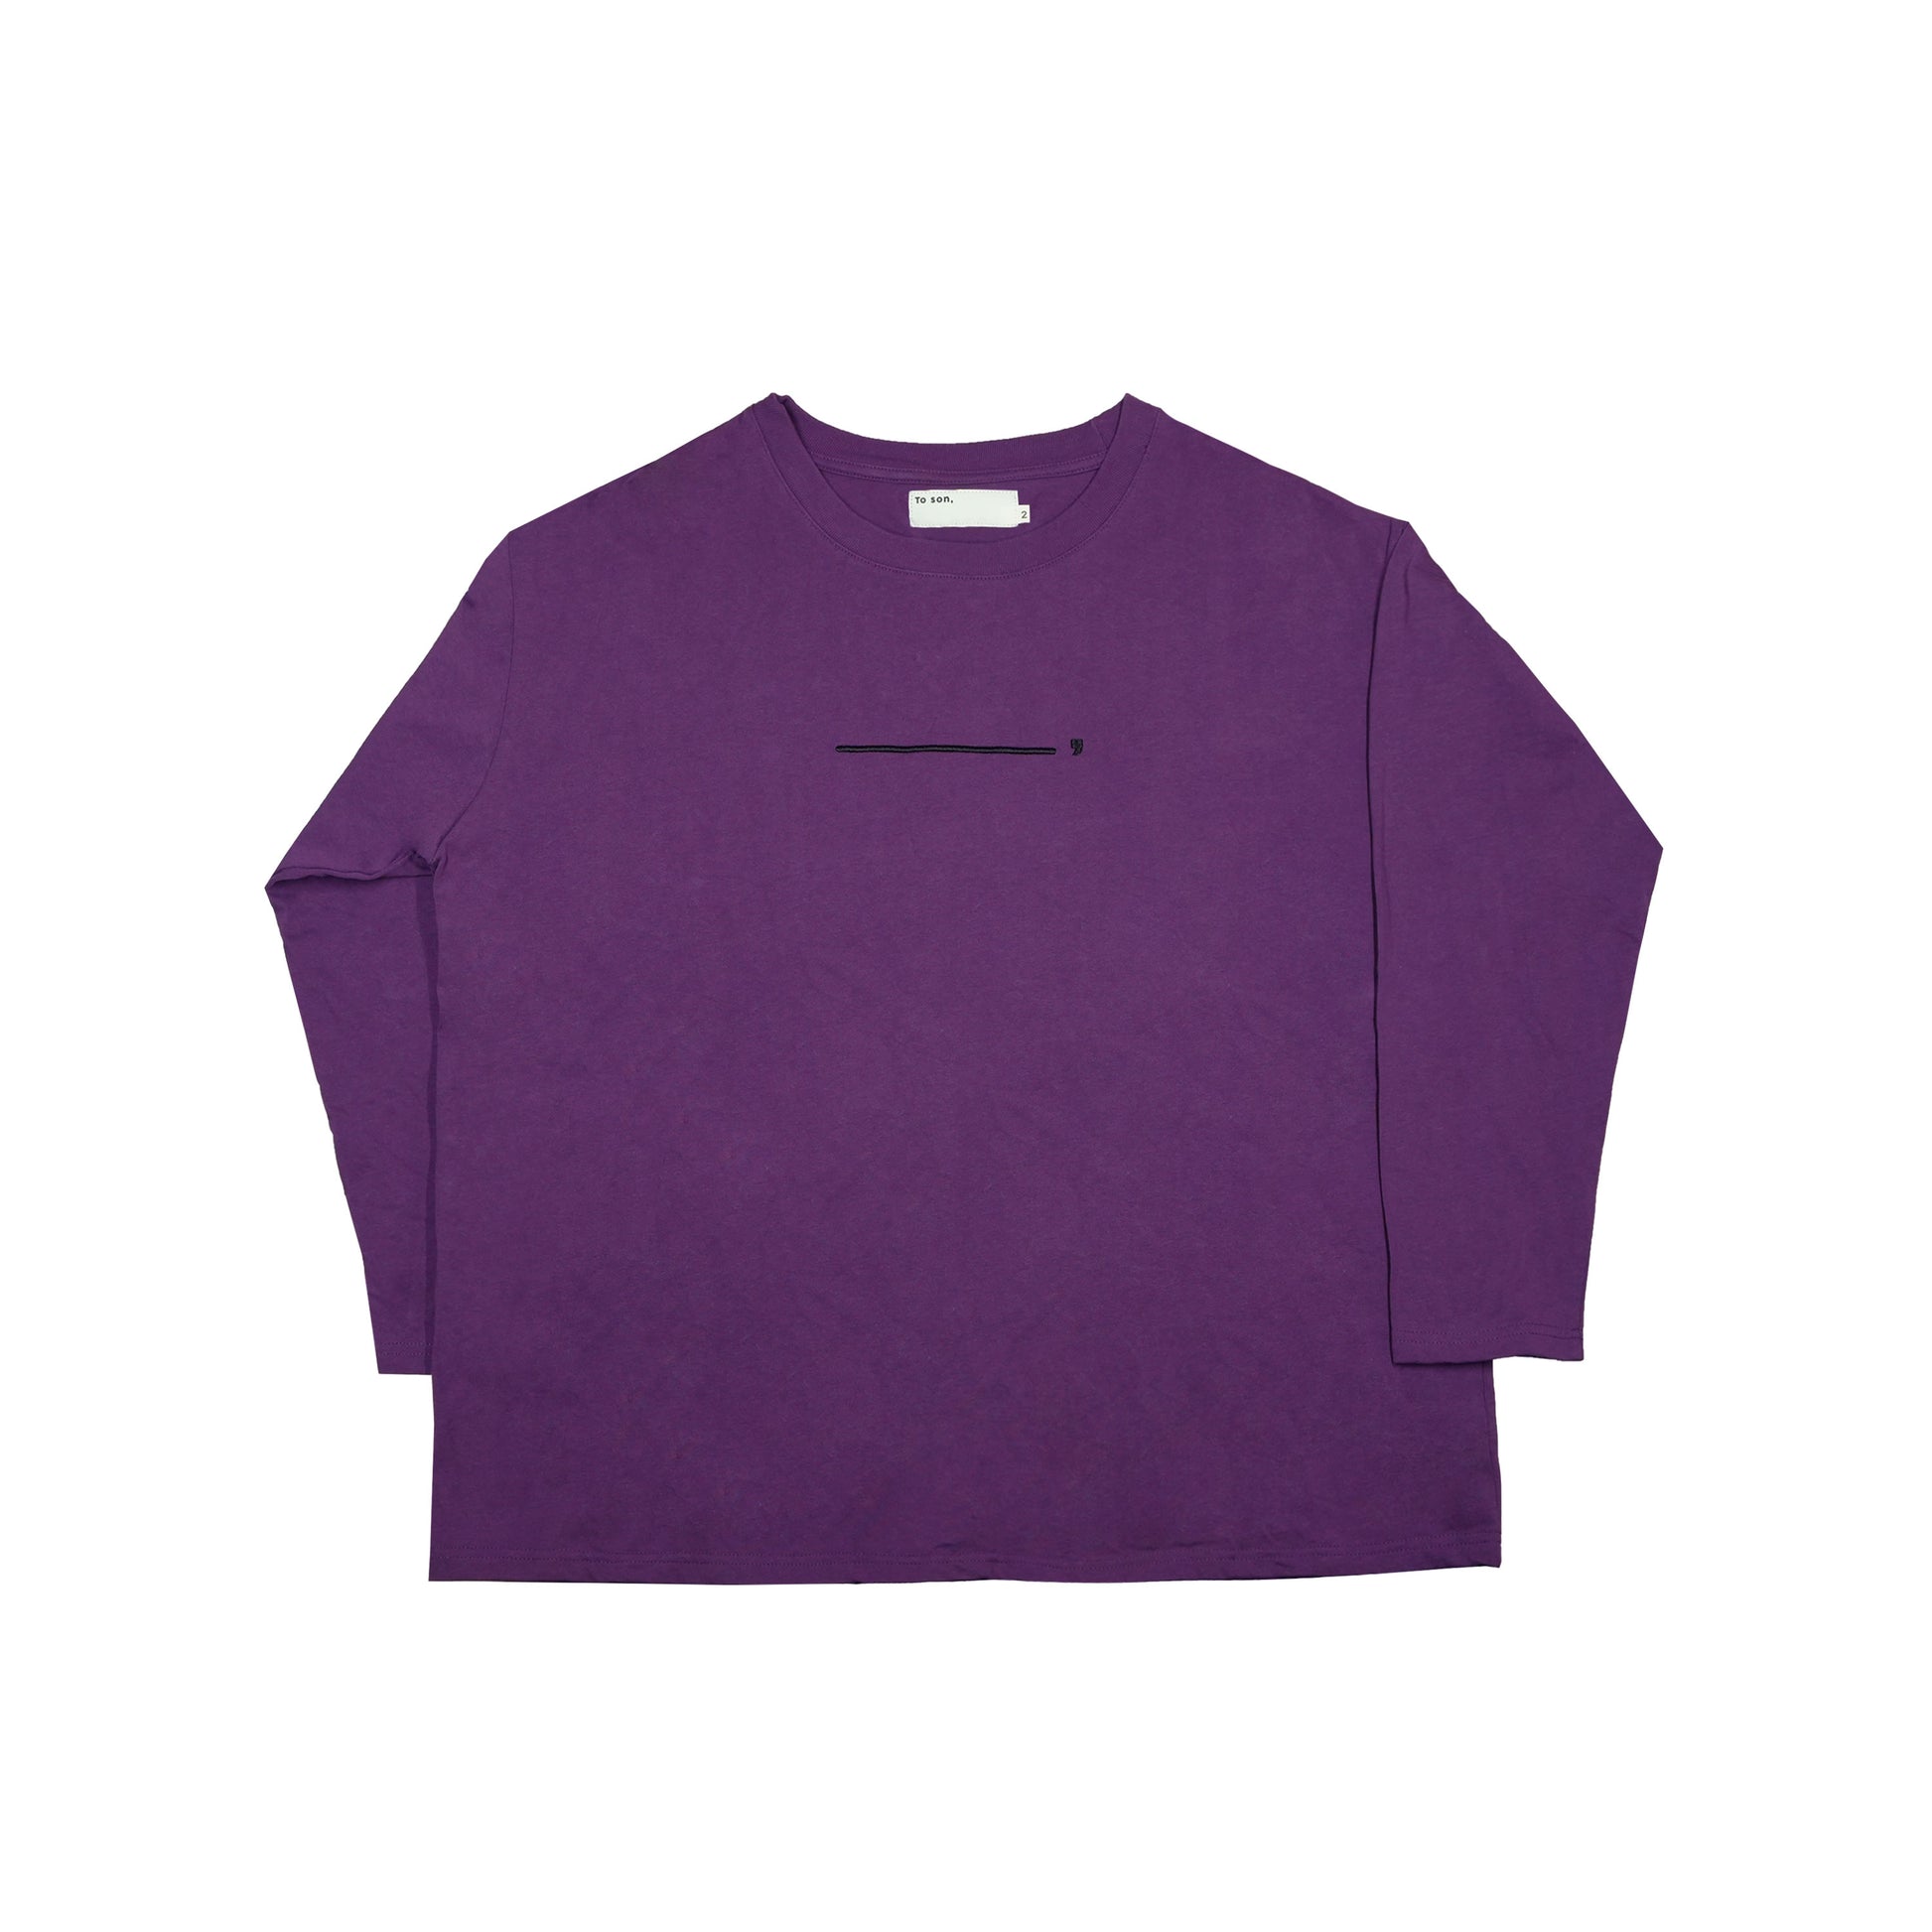 Toson, "Cloud" Patchwork Long Sleeve T-shirt - Purple